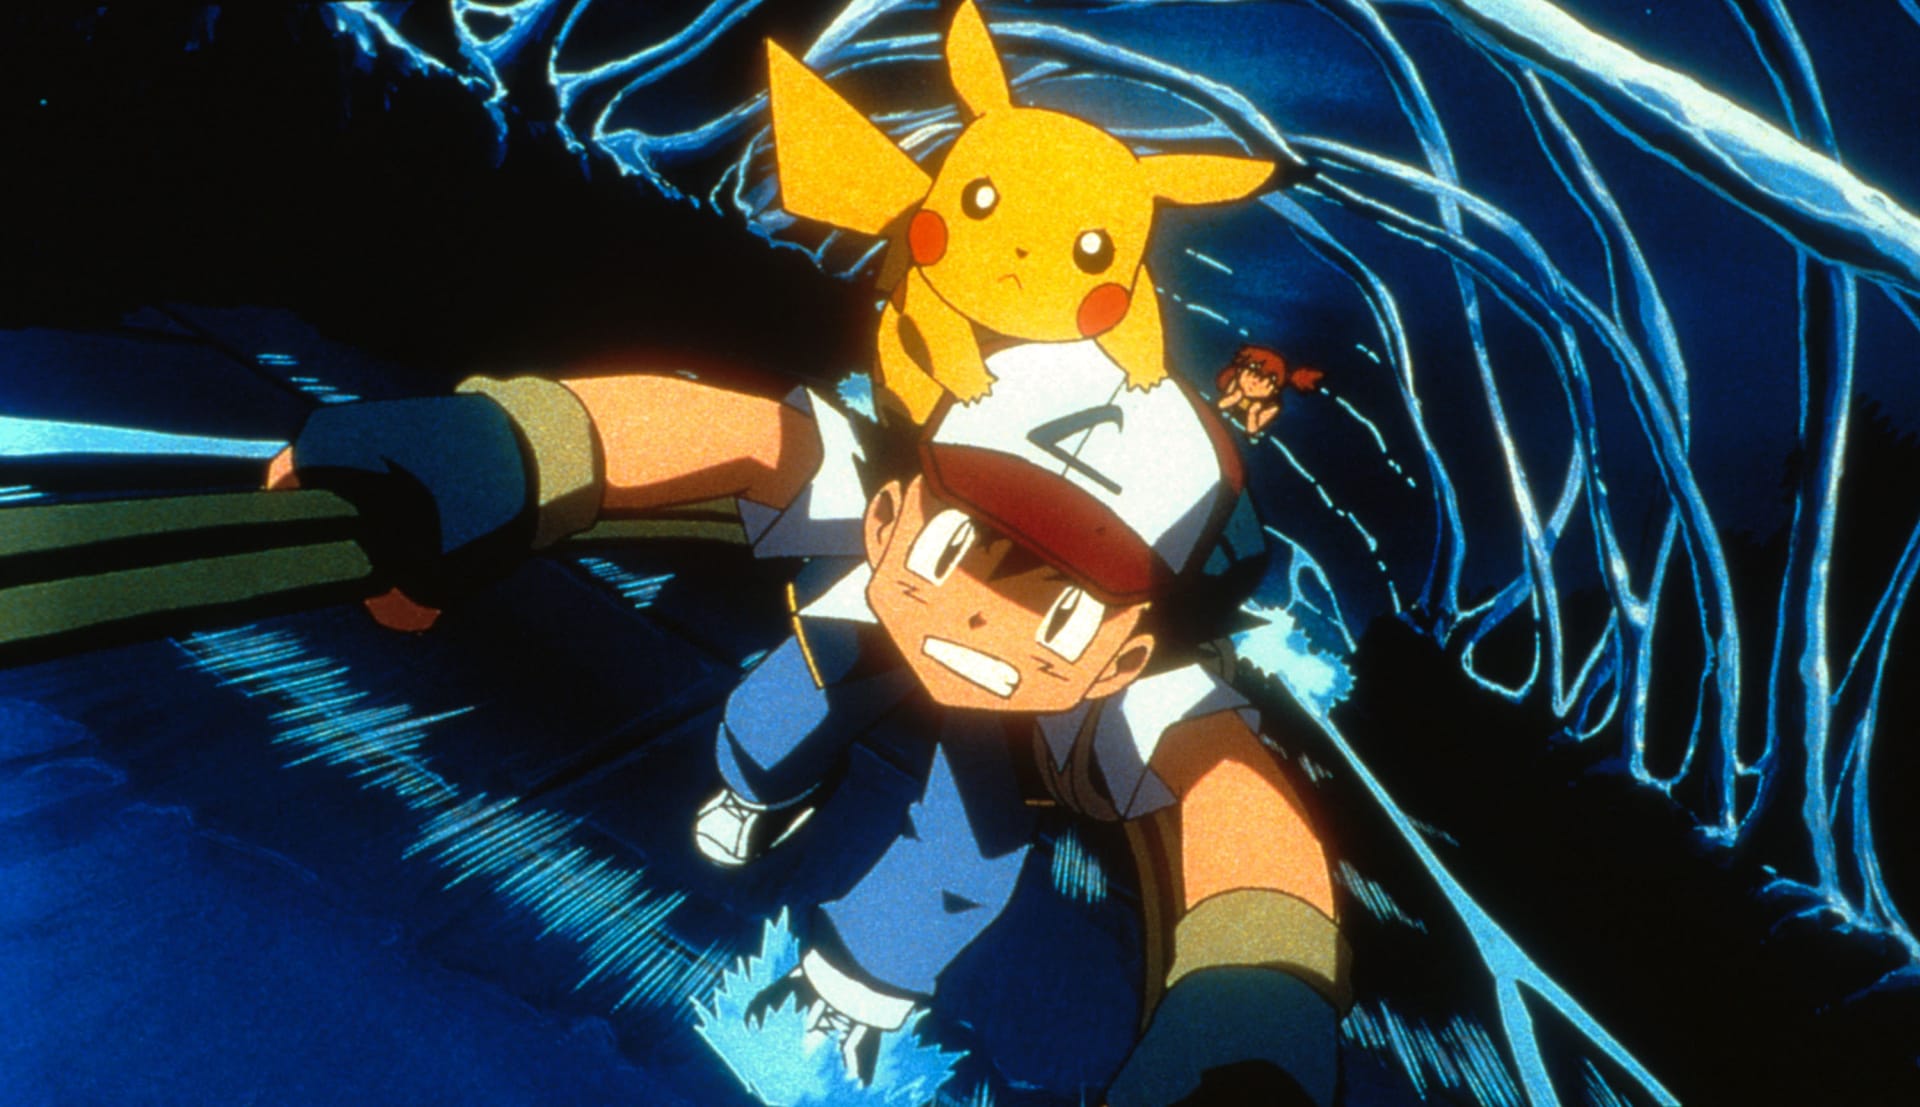 Ash Ketchum, hlavní postava seriálu Pokémon, po 25 letech odejde z televizních obrazovek. Pro mileniály a fanoušky japonského animovaného seriálu jde o zlomový moment.